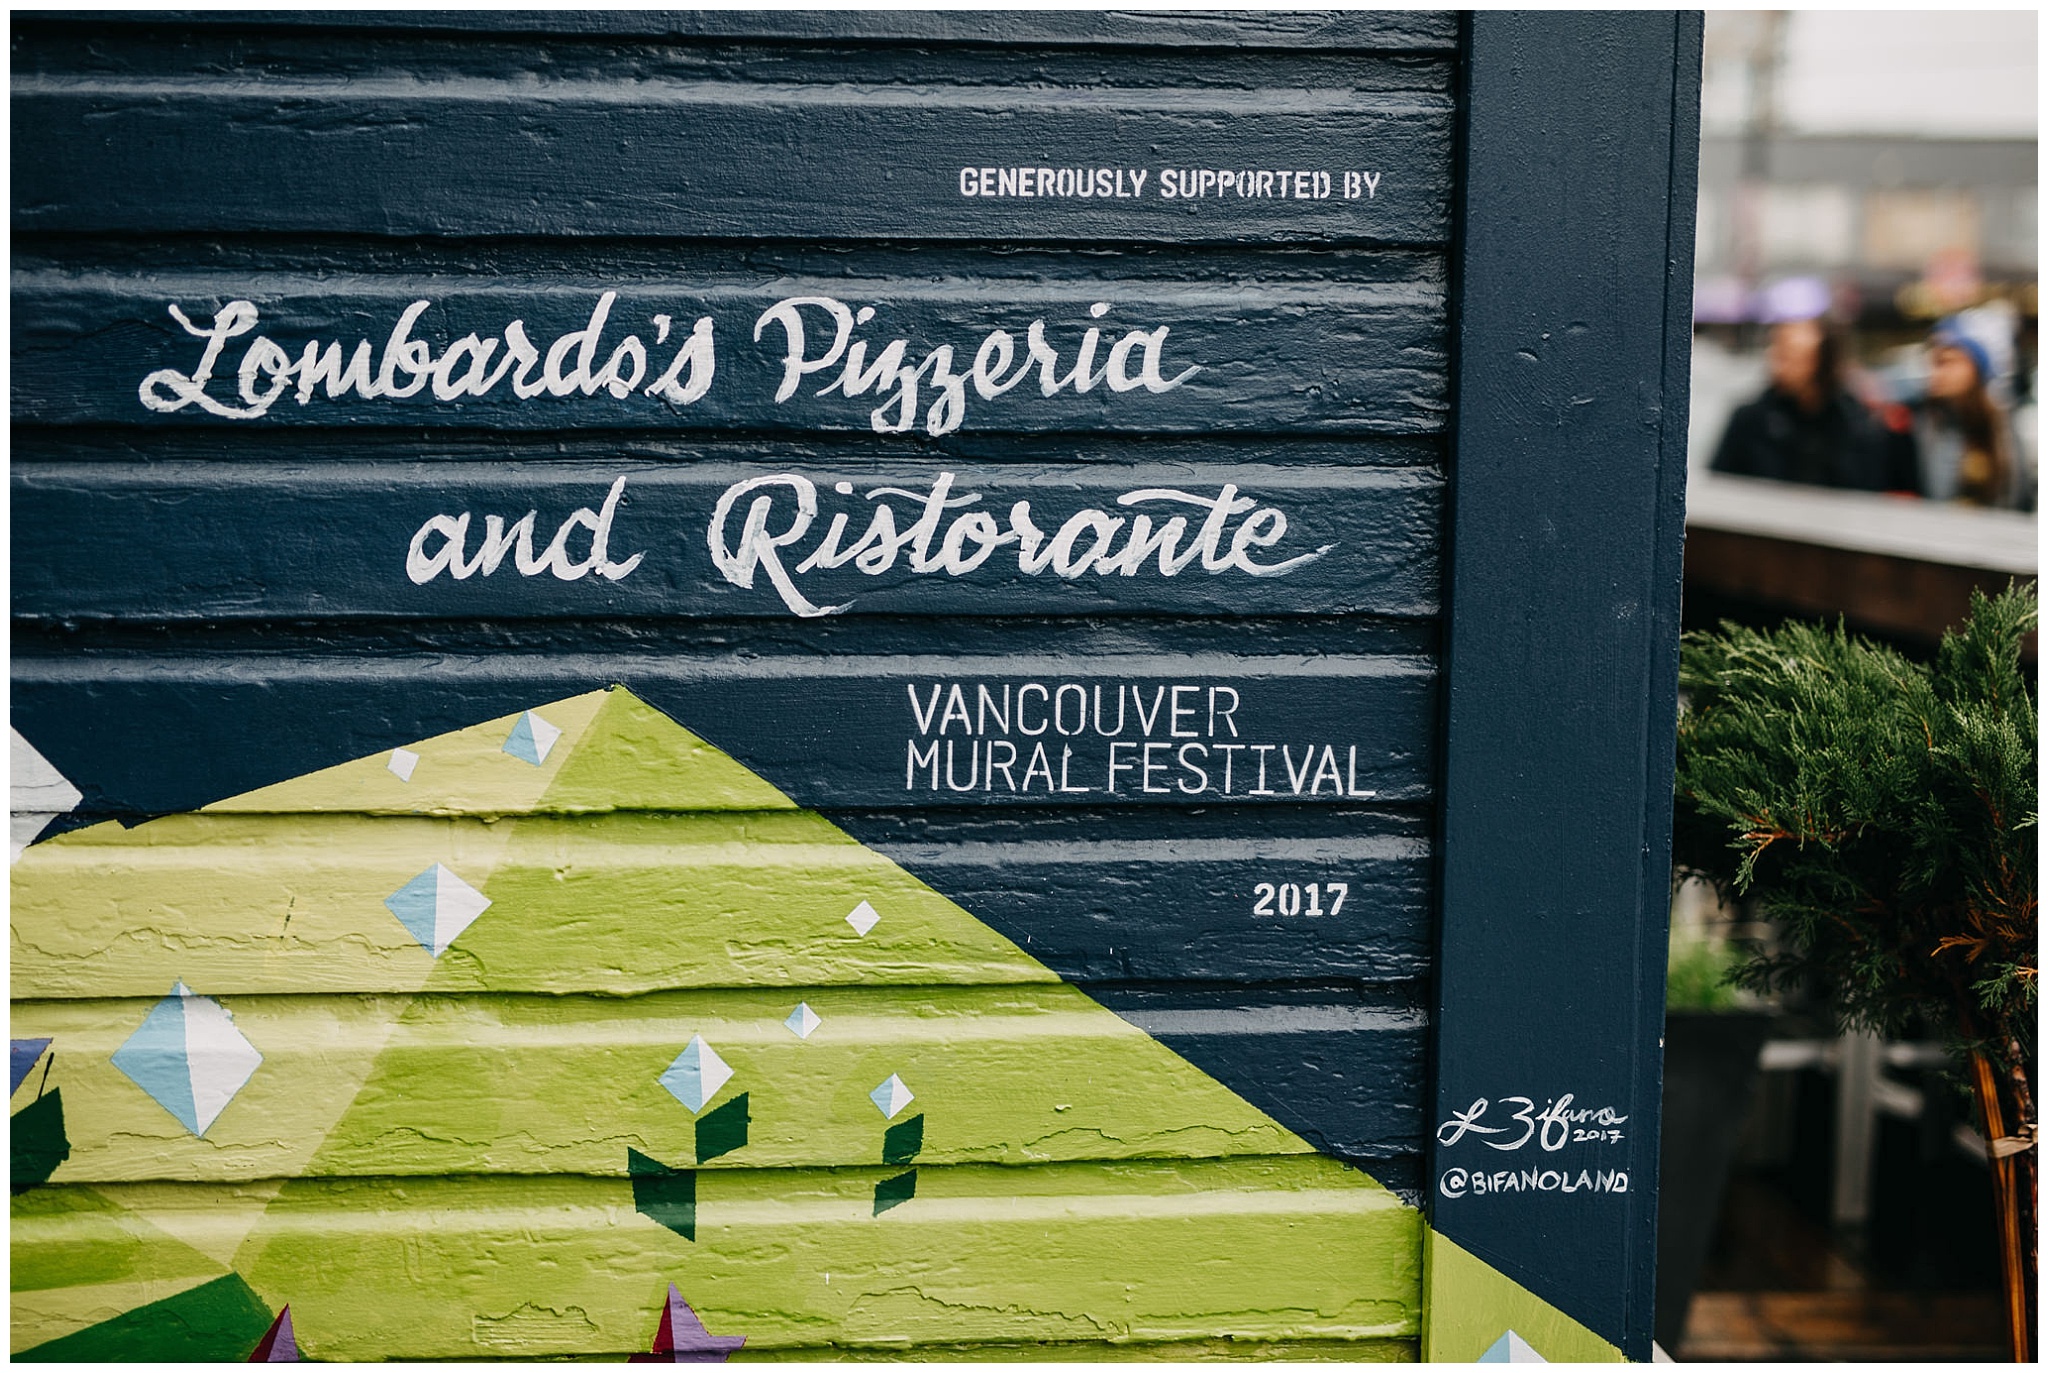 vancouver mural festival 2017 lombardo's pizzeria and ristorante